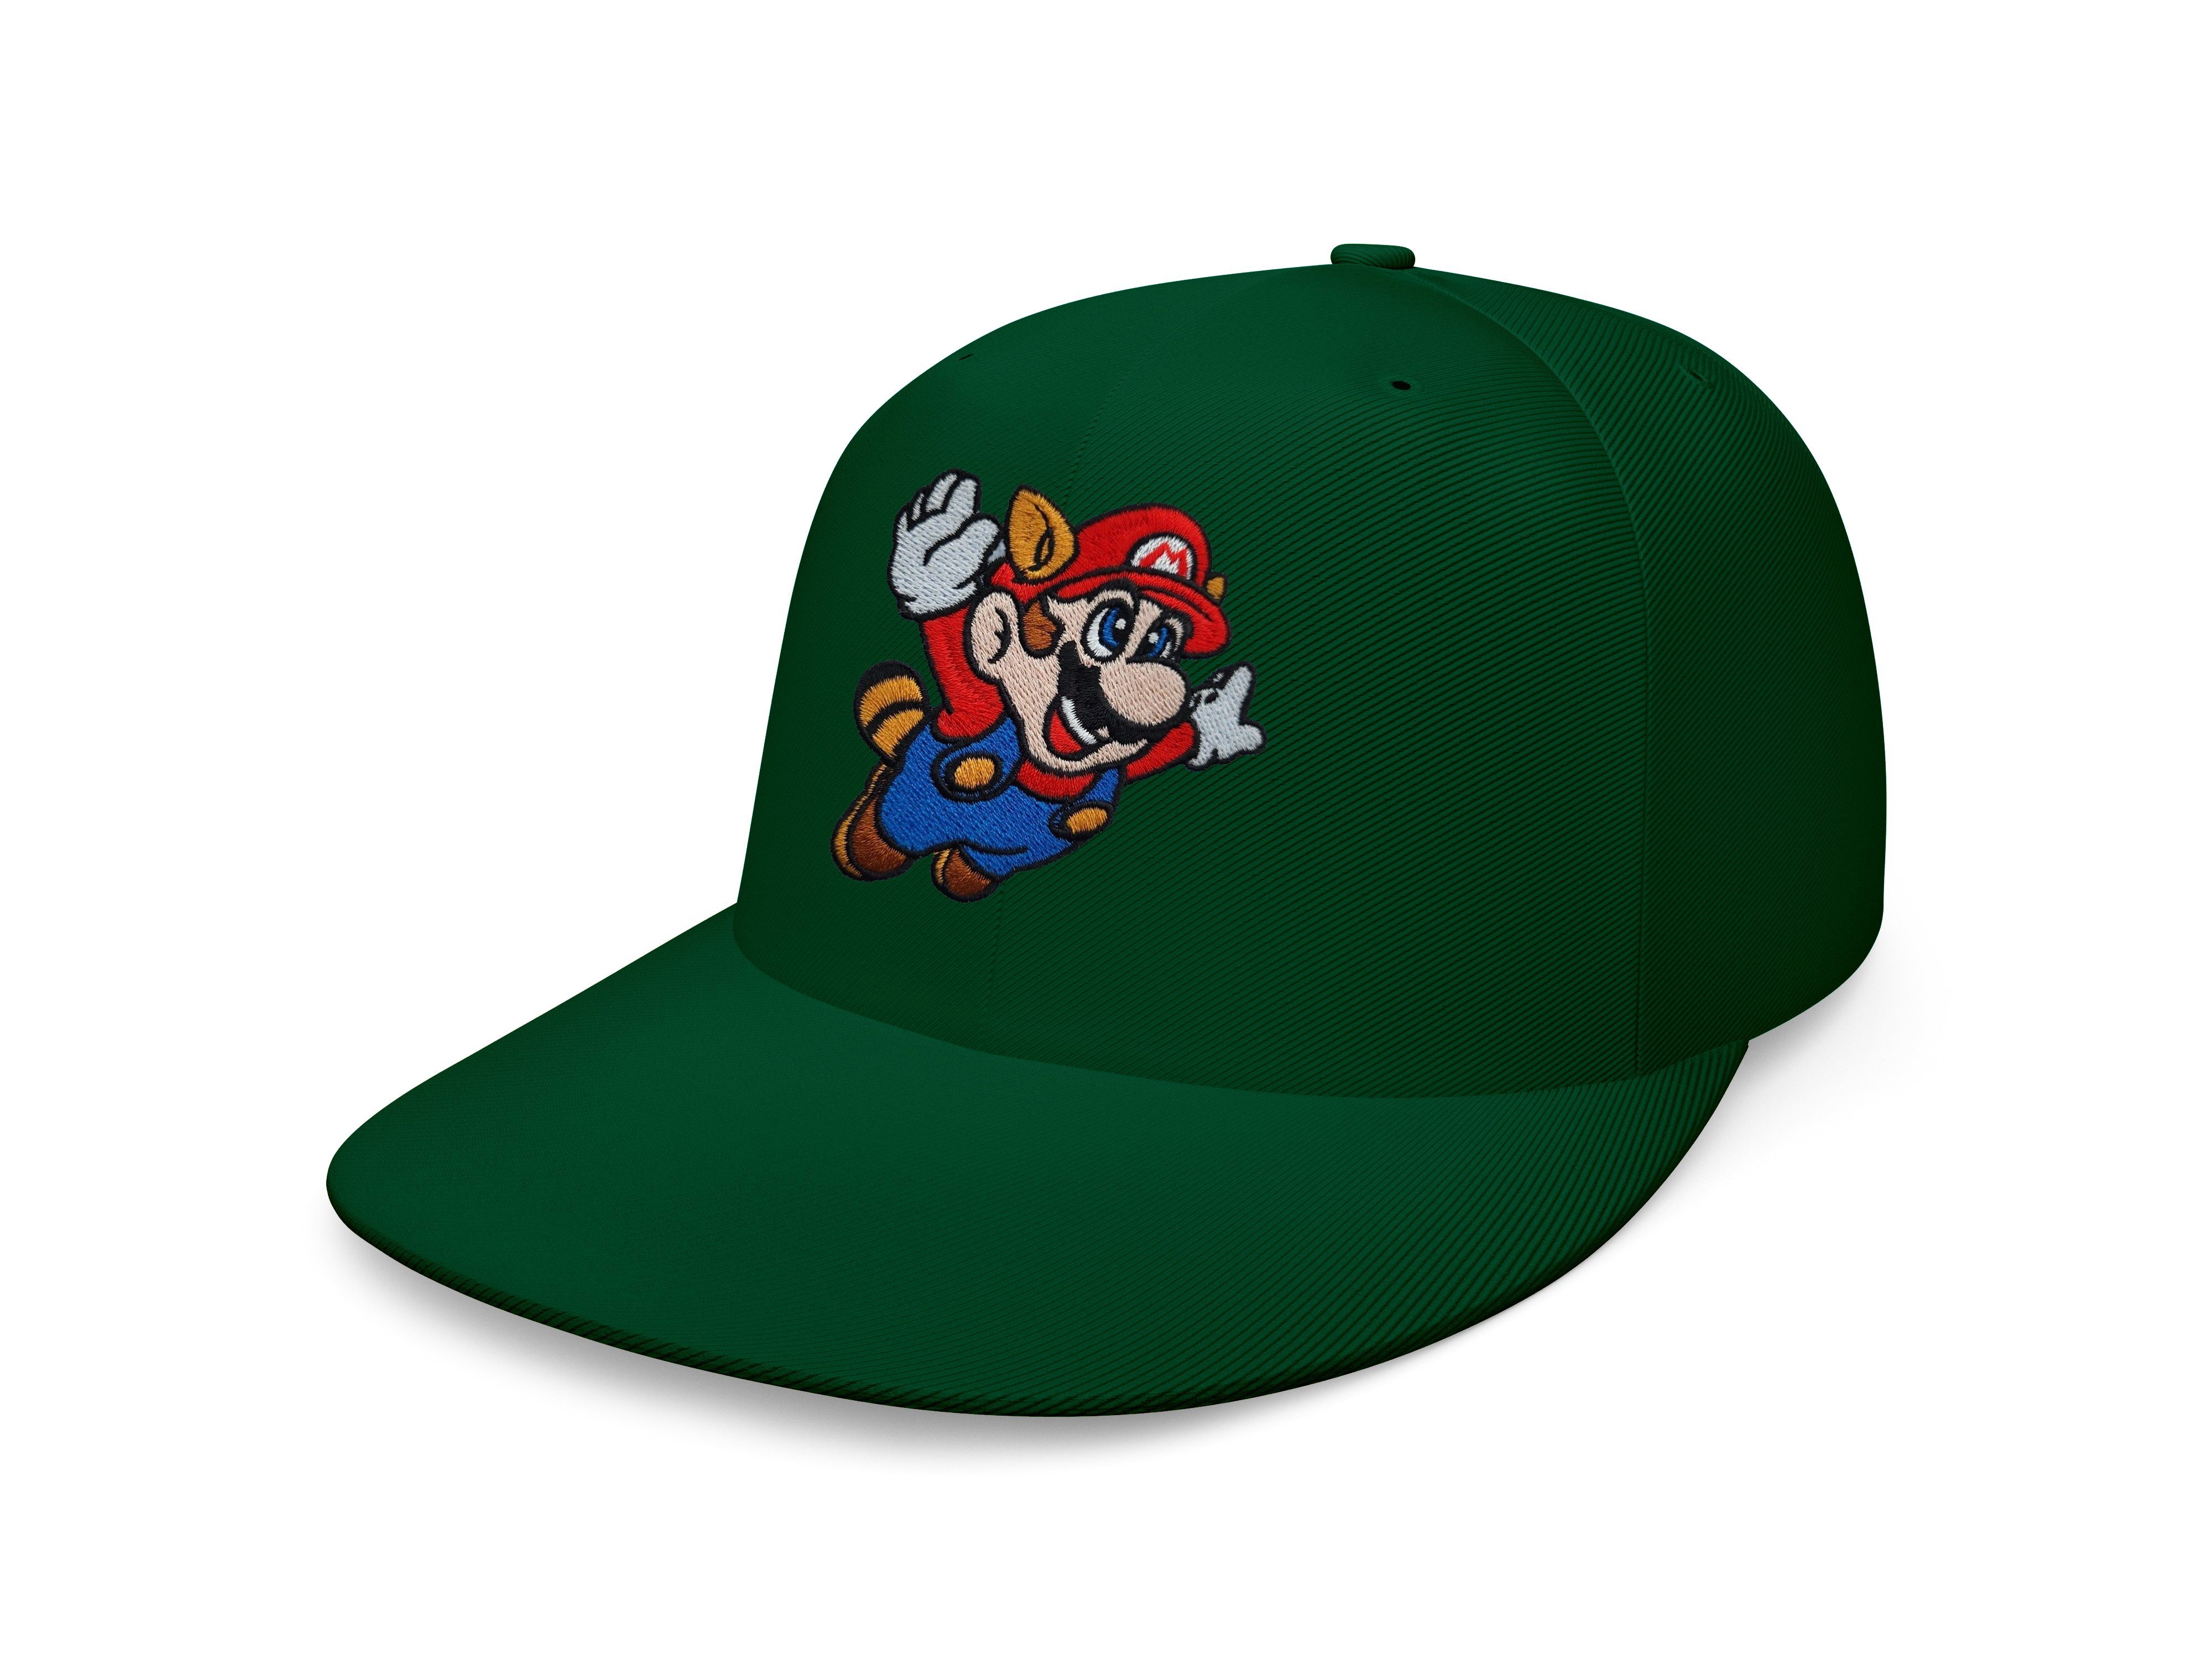 Blondie & Brownie Baseball Cap Unisex Erwachsene Mario Fligh Stick Patch Luigi Nintendo Snapback Flaschengrün